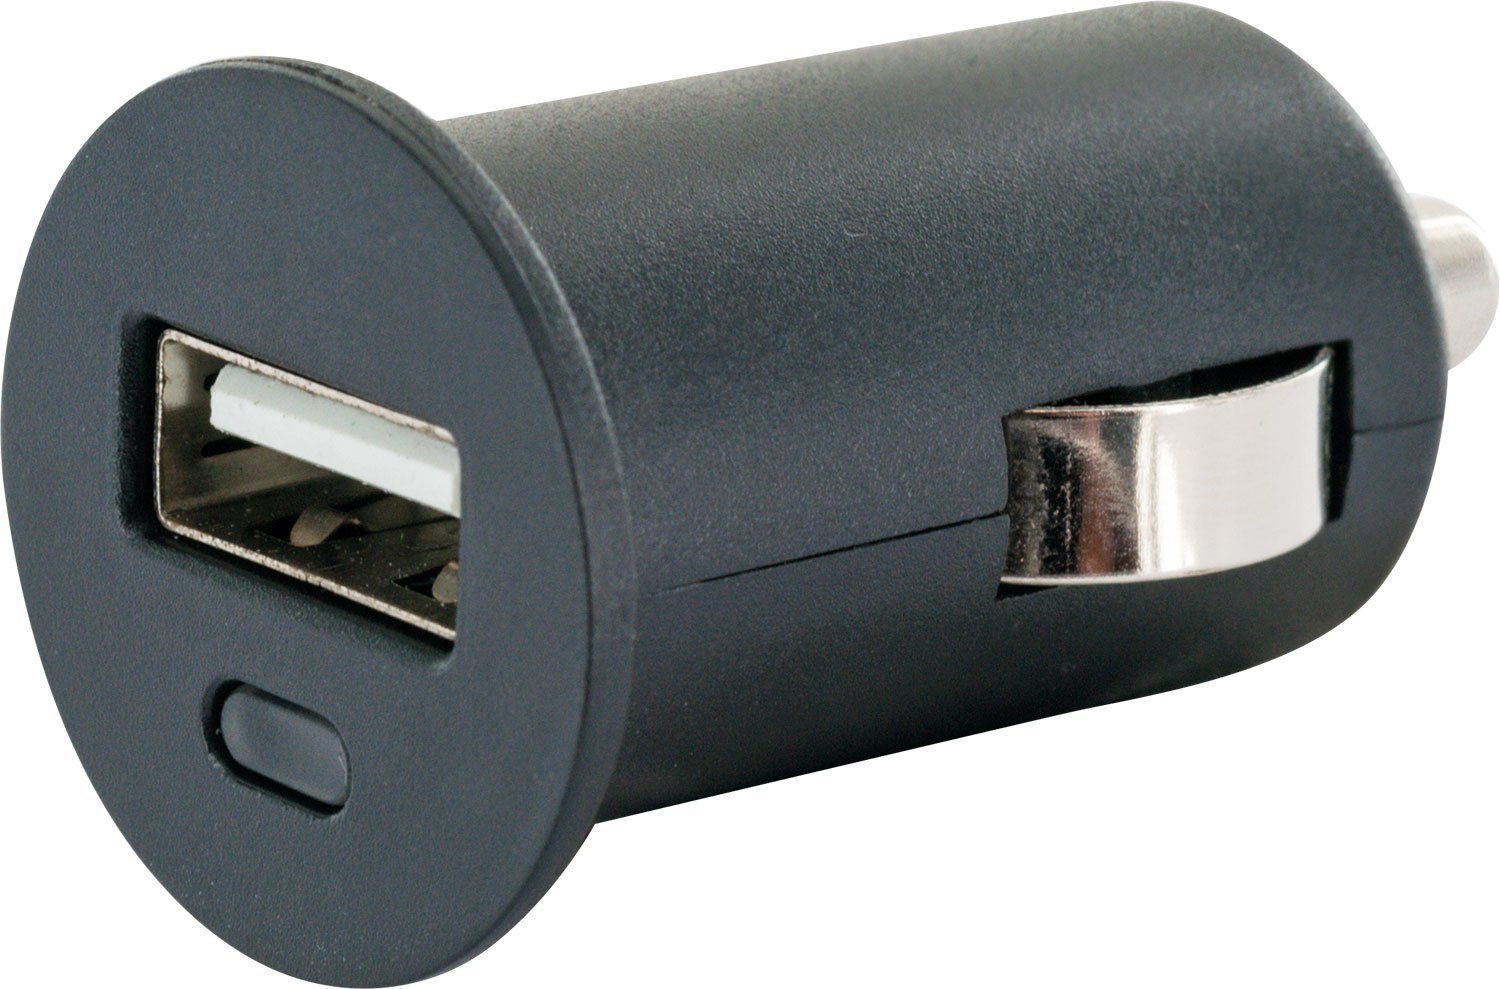 Schwaiger LAD12 531 integriertes Sicherheitssystem A Buchse, USB zu KFZ-Adapter Multi-Schutz Zigarettenanzünder 2.0